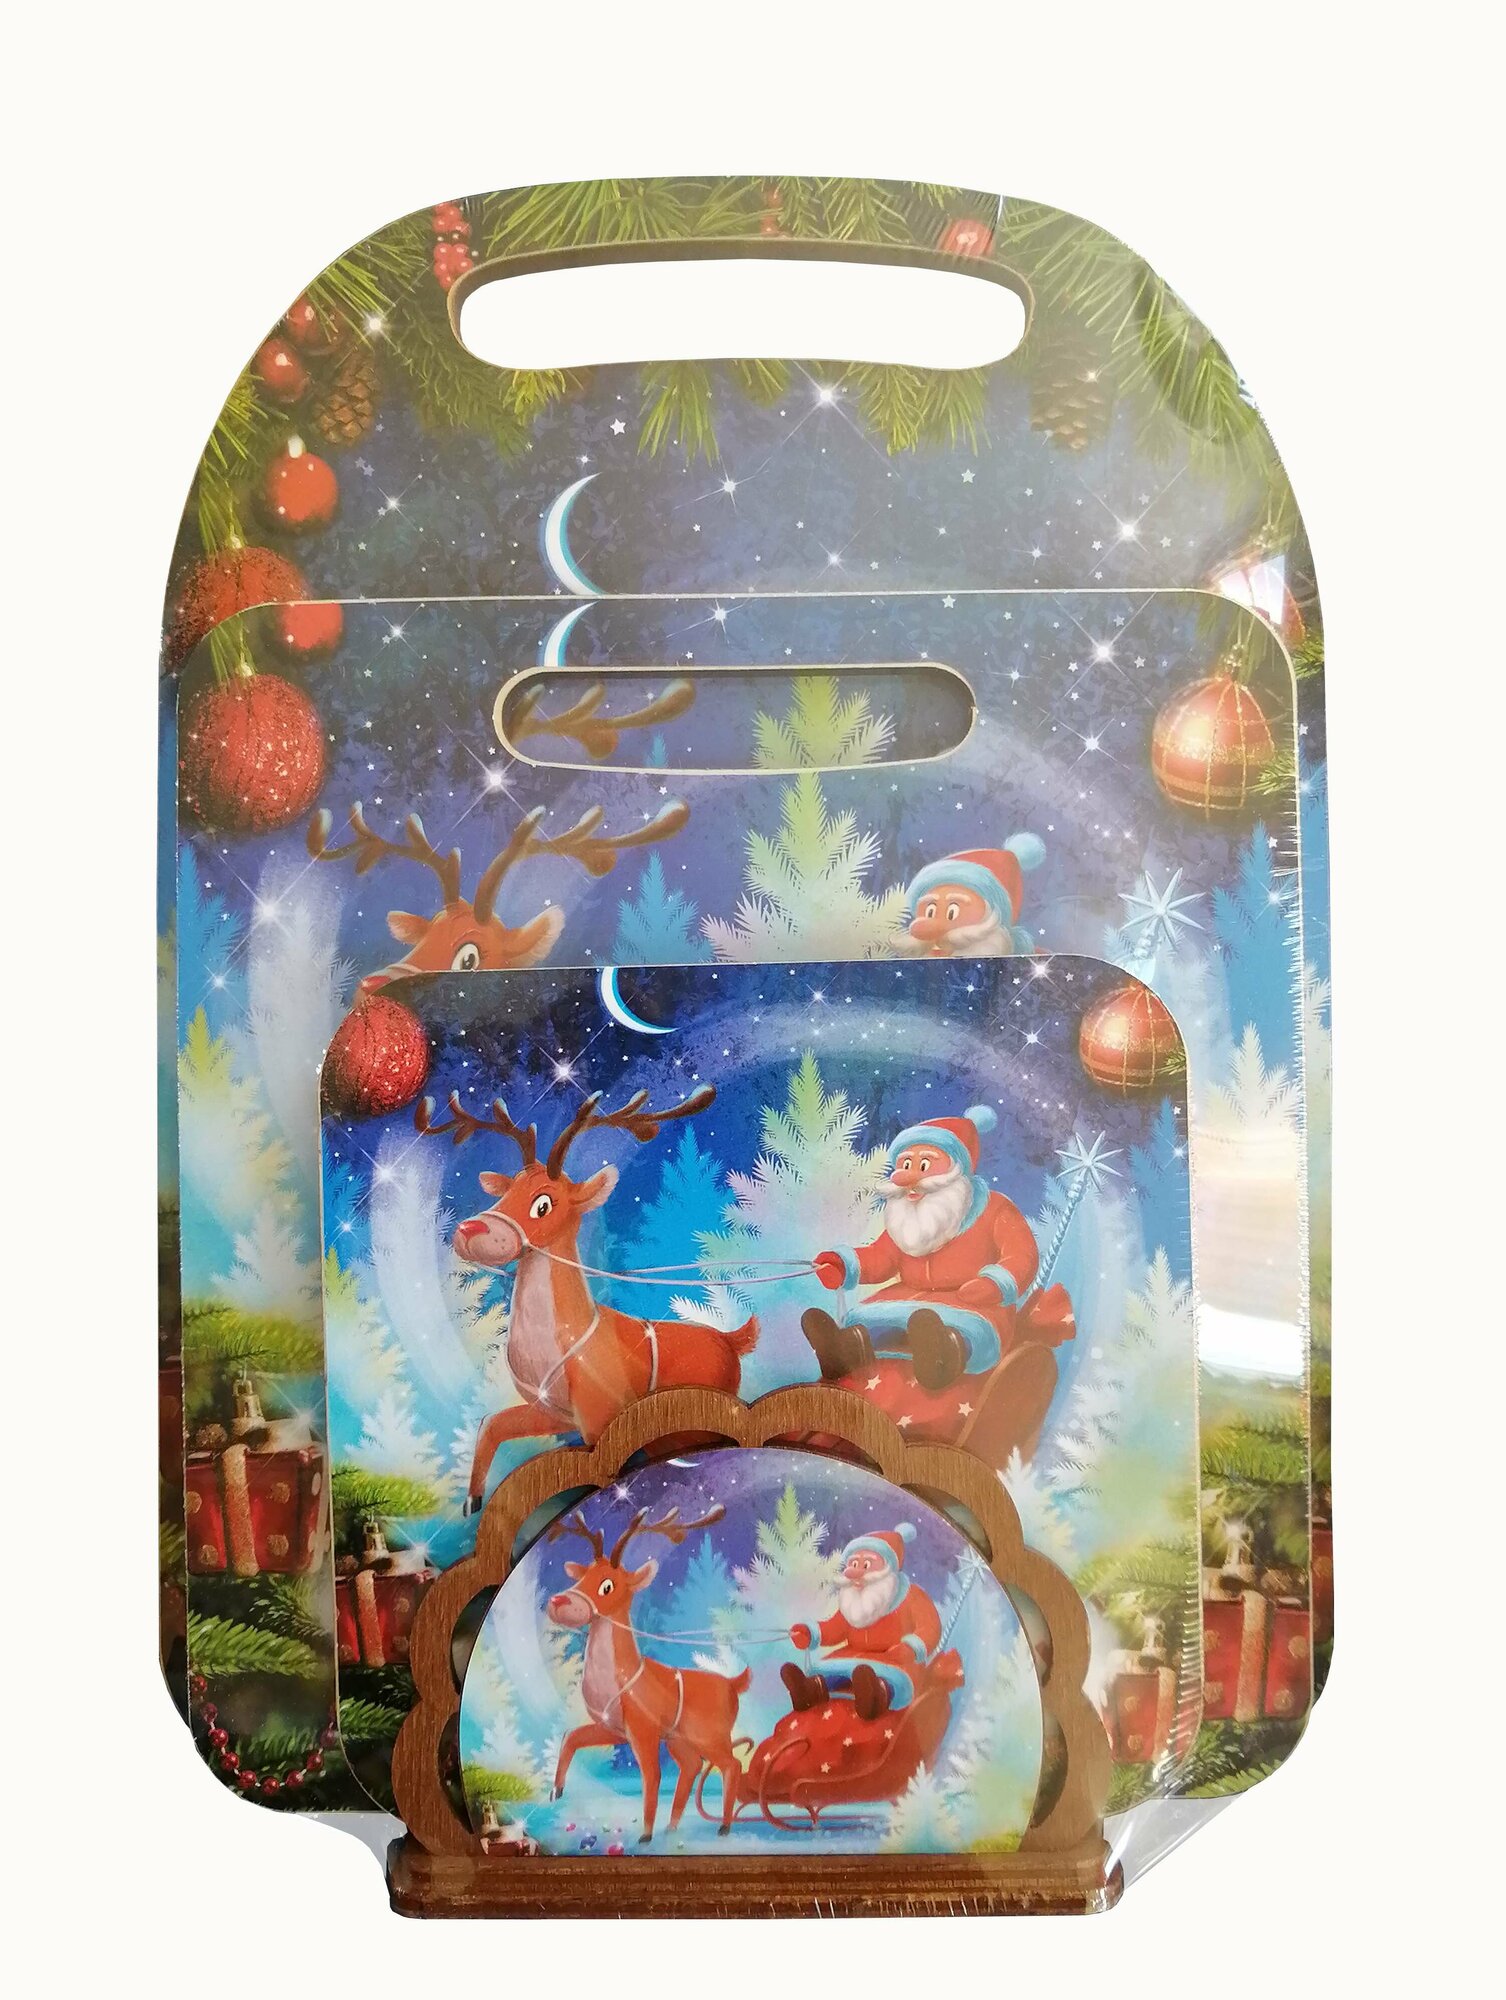 Комплект "Дед Мороз и олень" (доска разделочная, доска малая, подставка под горячее 14 см, салфетница).